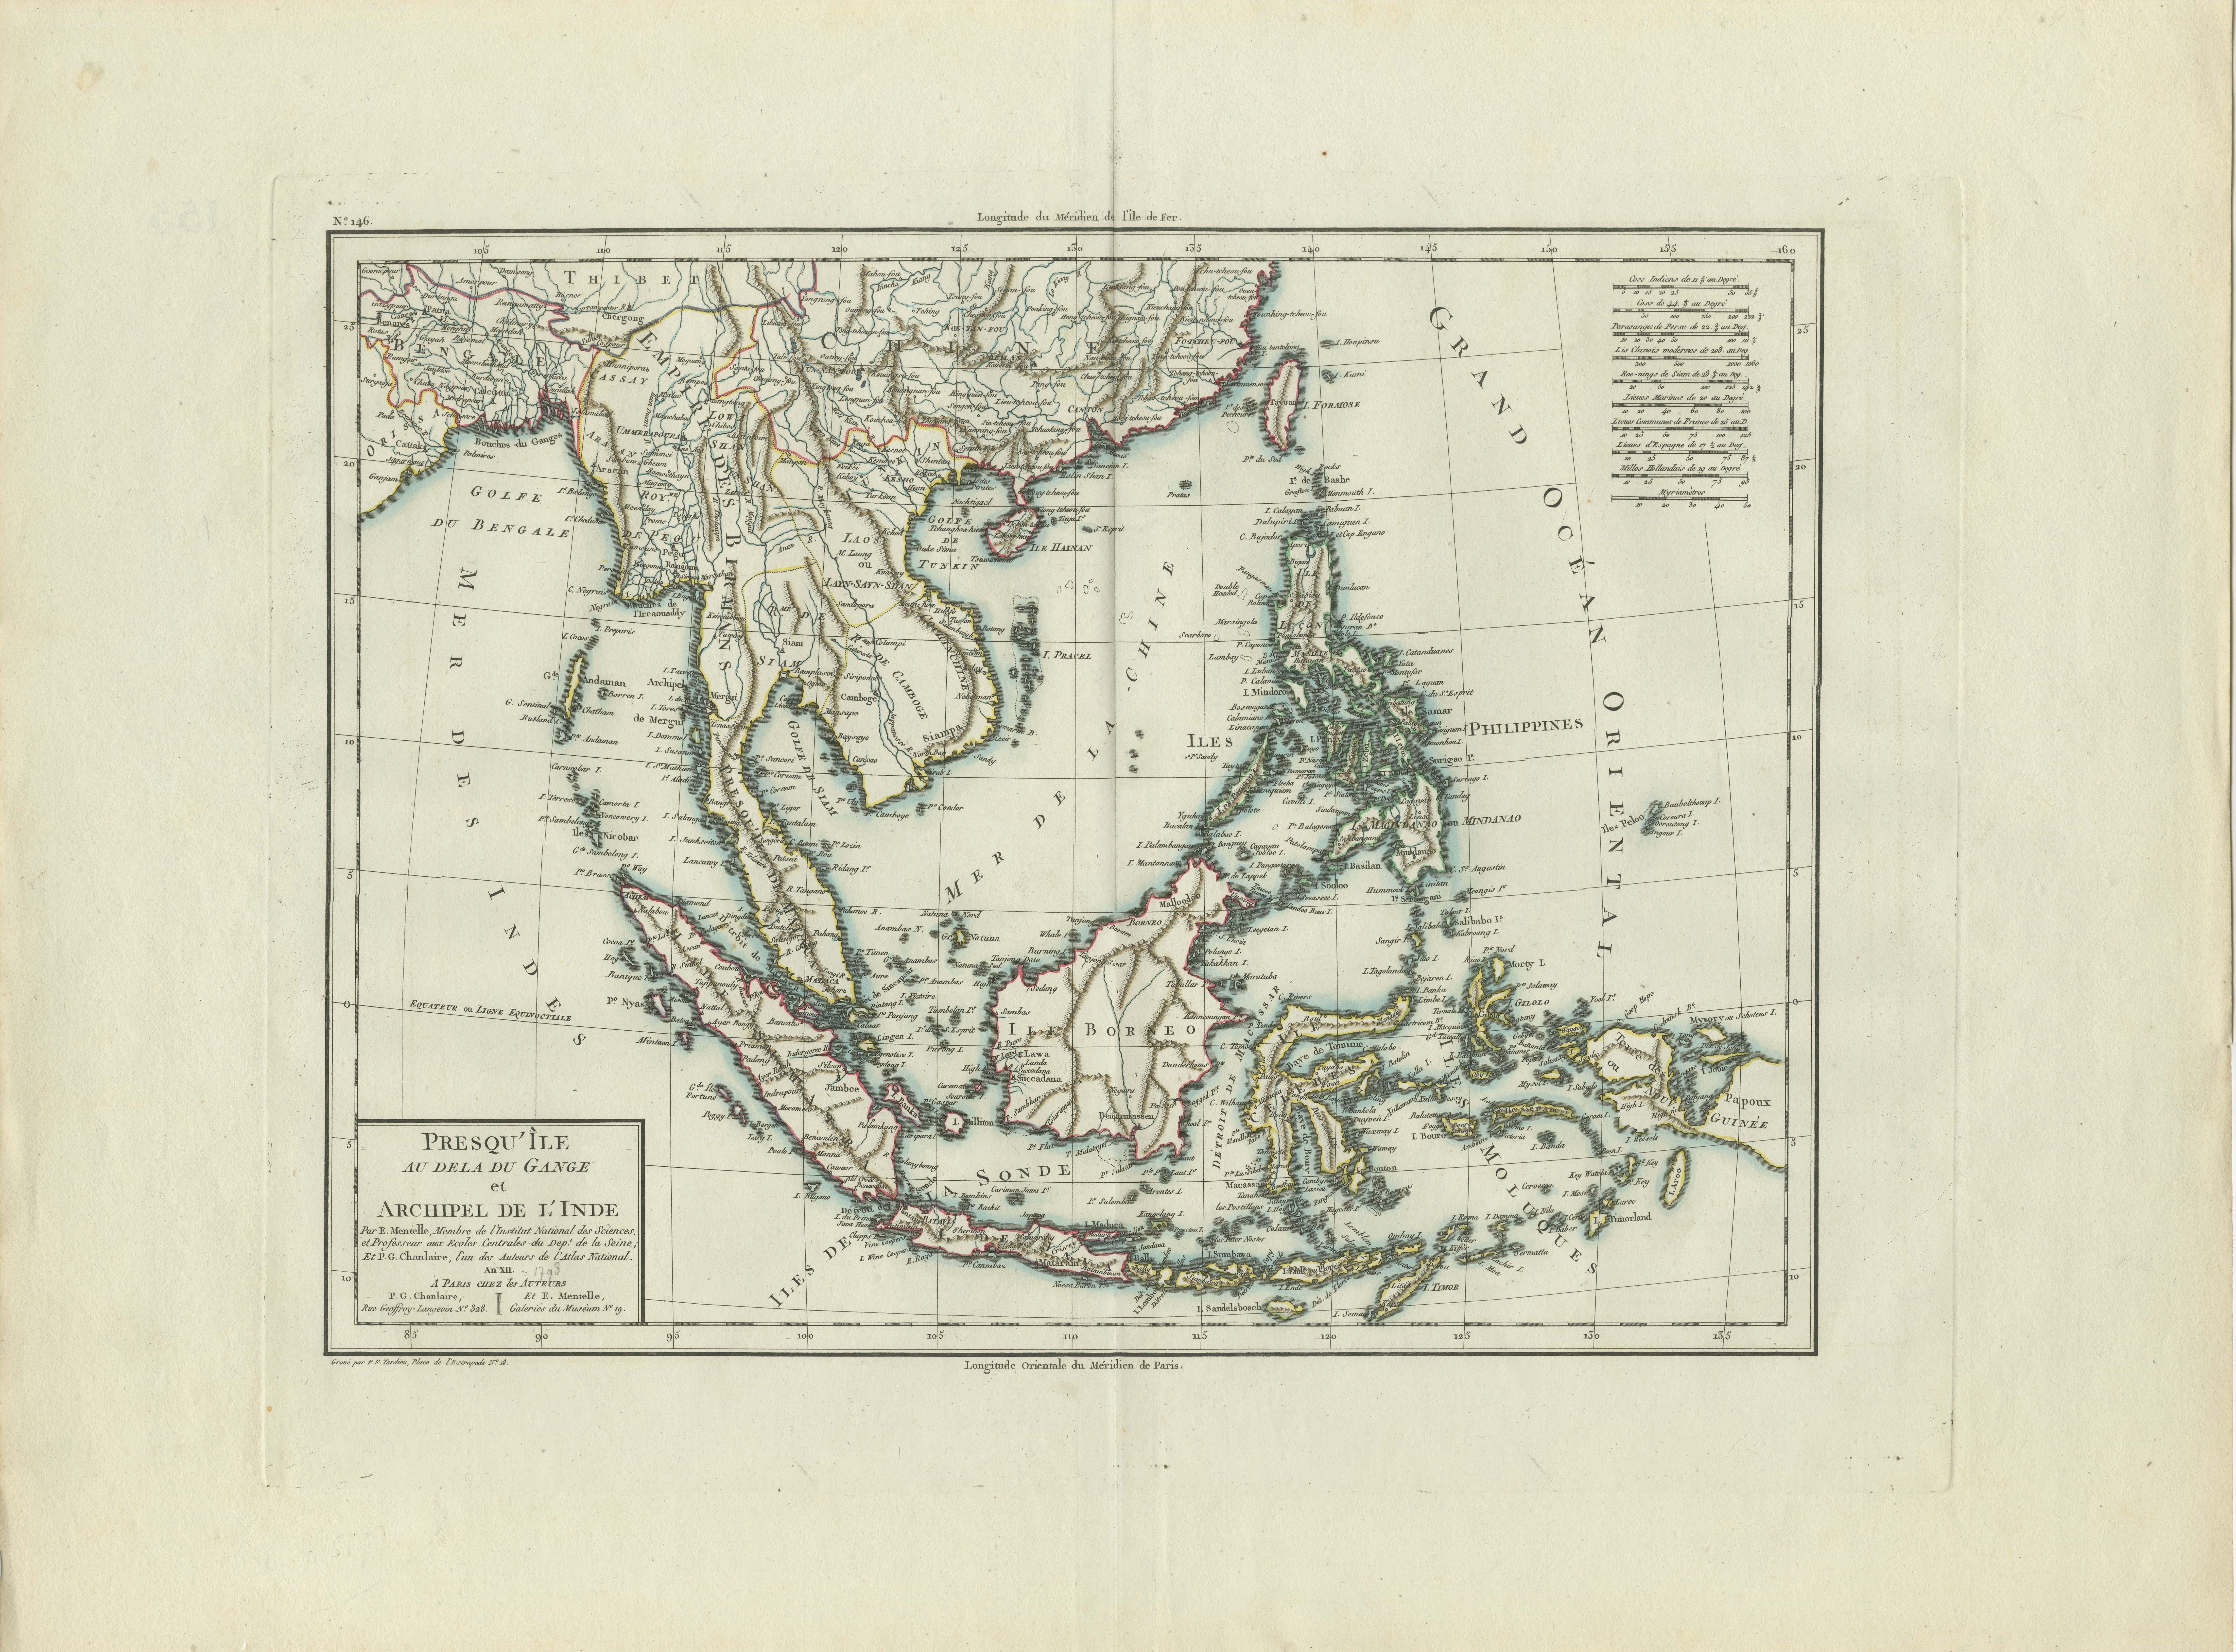 An original historical map titled 'Presqu' Île Au Dela Du Gange et Archipel De L'Inde', created by Pierre Francois Tardieu and published in the 